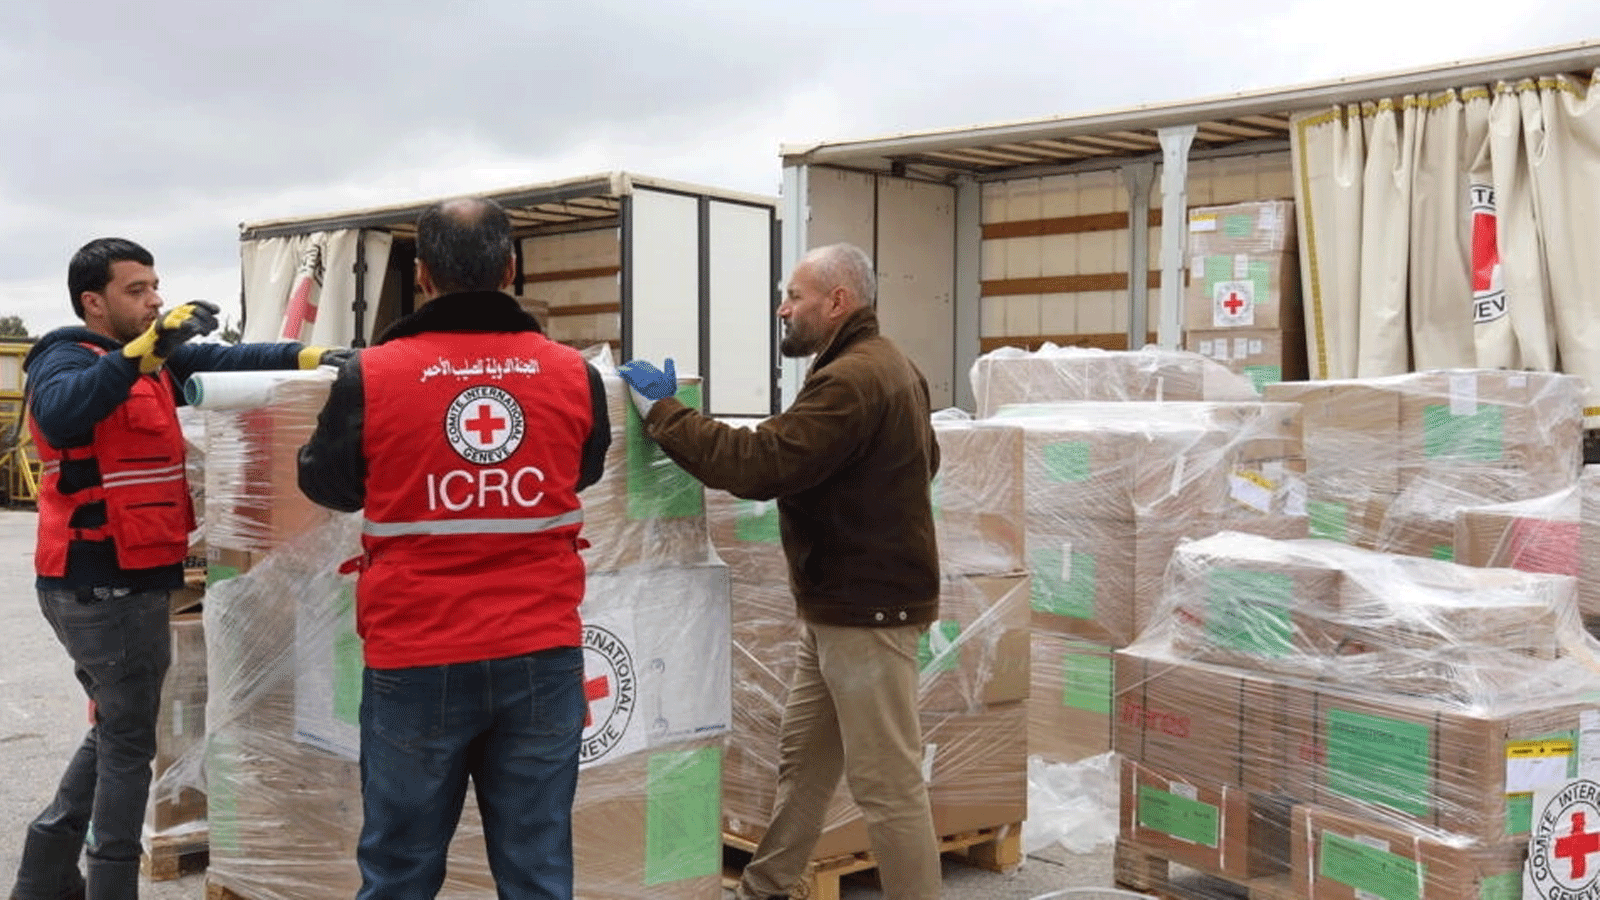 صورة نشرتها اللجنة الدولية للصليب الأحمر في 30 أبريل / نيسان 2023 لأعضاء اللجنة الدولية للصليب الأحمر وهم يعدون صناديق المساعدات الإنسانية في عمان قبل تحميلها على متن طائرة متجهة إلى بورت سودا